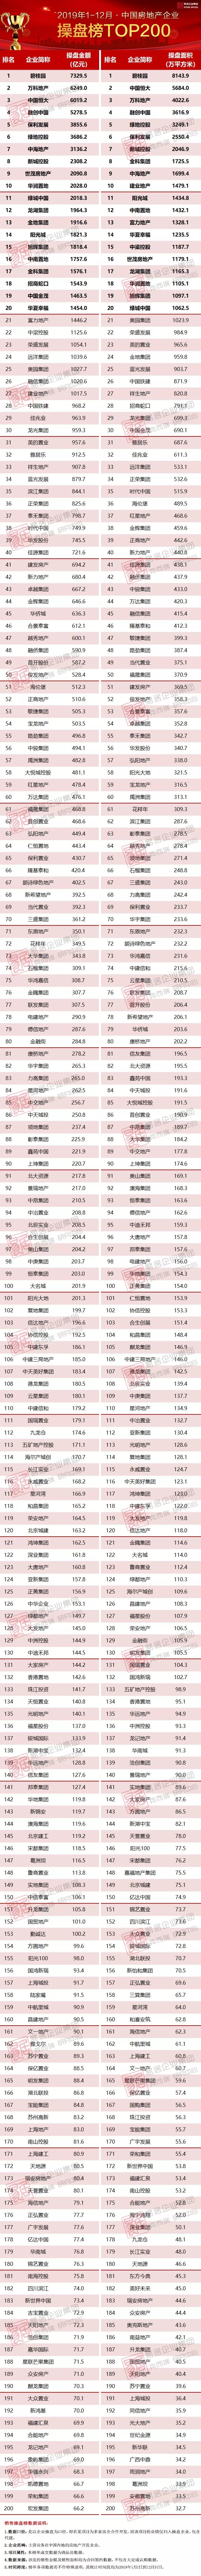 三亿体育注册登录2019年中国房地产企业销售TOP200排行榜(图1)